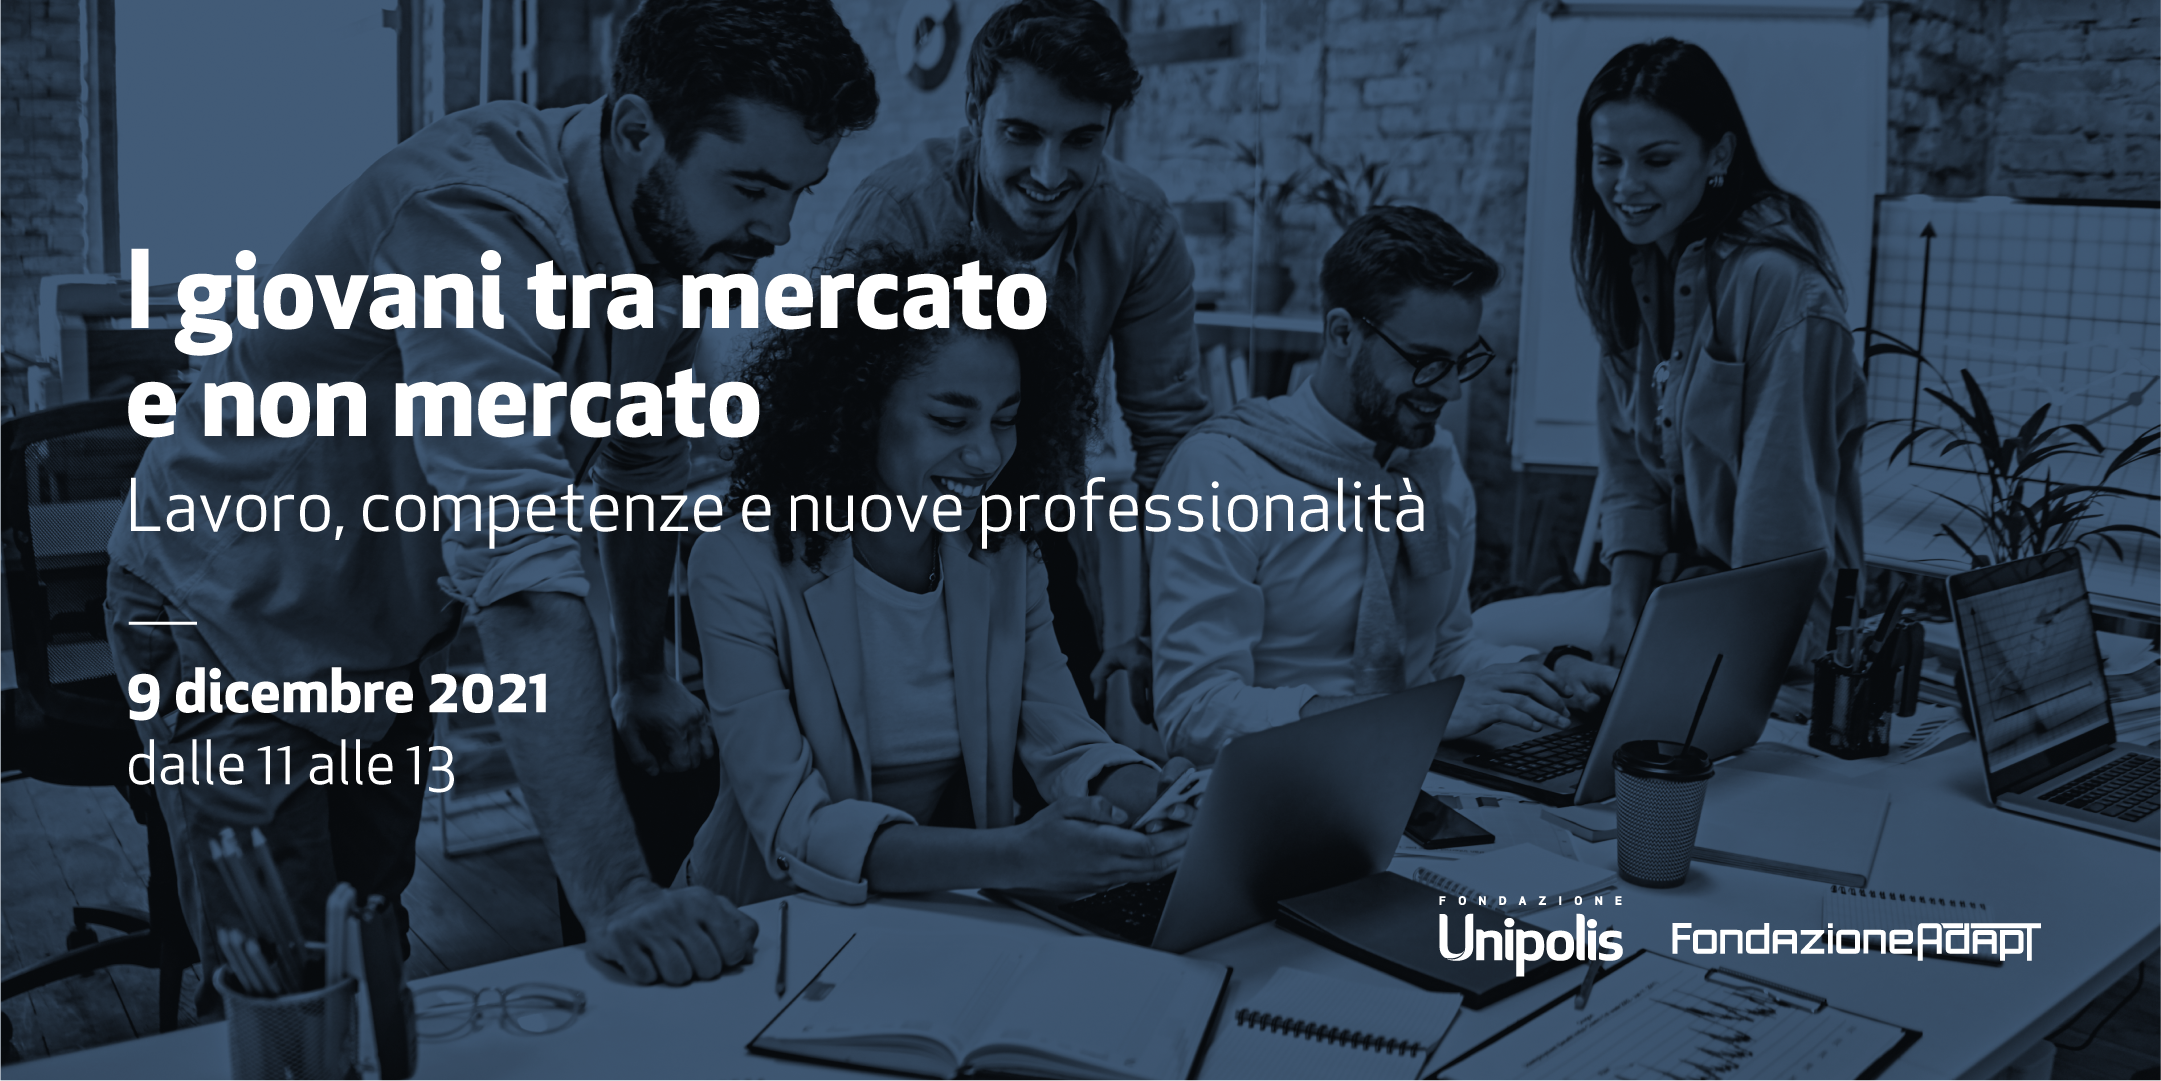 Fondazione Unipolis presenta: I giovani tra mercato e non mercato. Lavoro, competenze e nuove professionalità